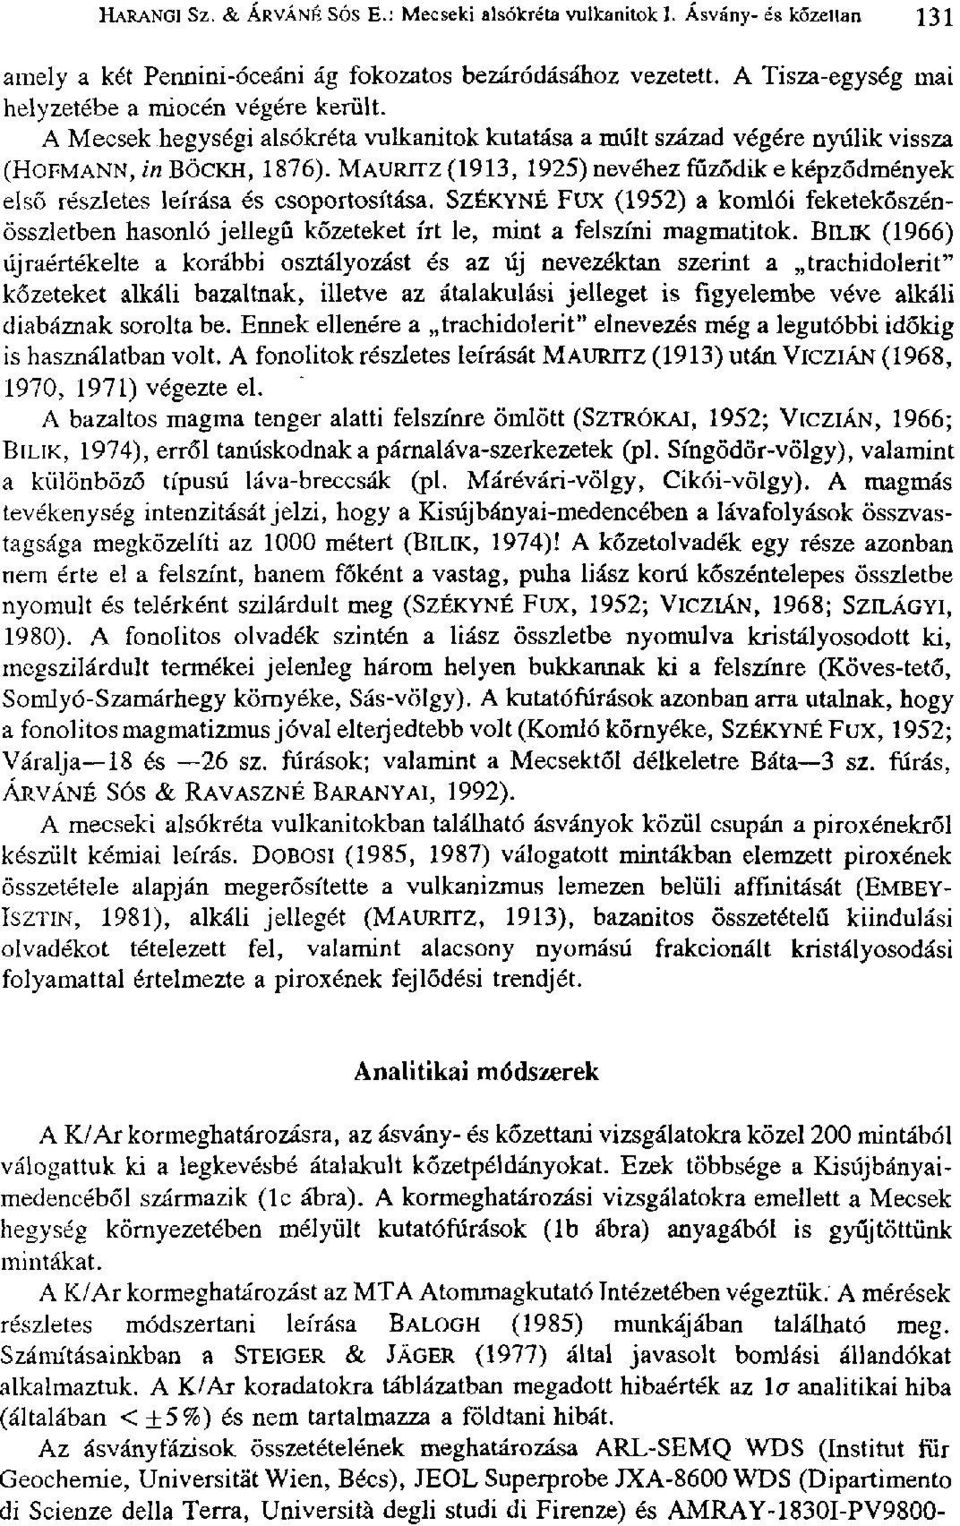 MAURITZ(1913, 1925) nevéhez fűződik eképződmények első részletes leírása és csoportosítása.